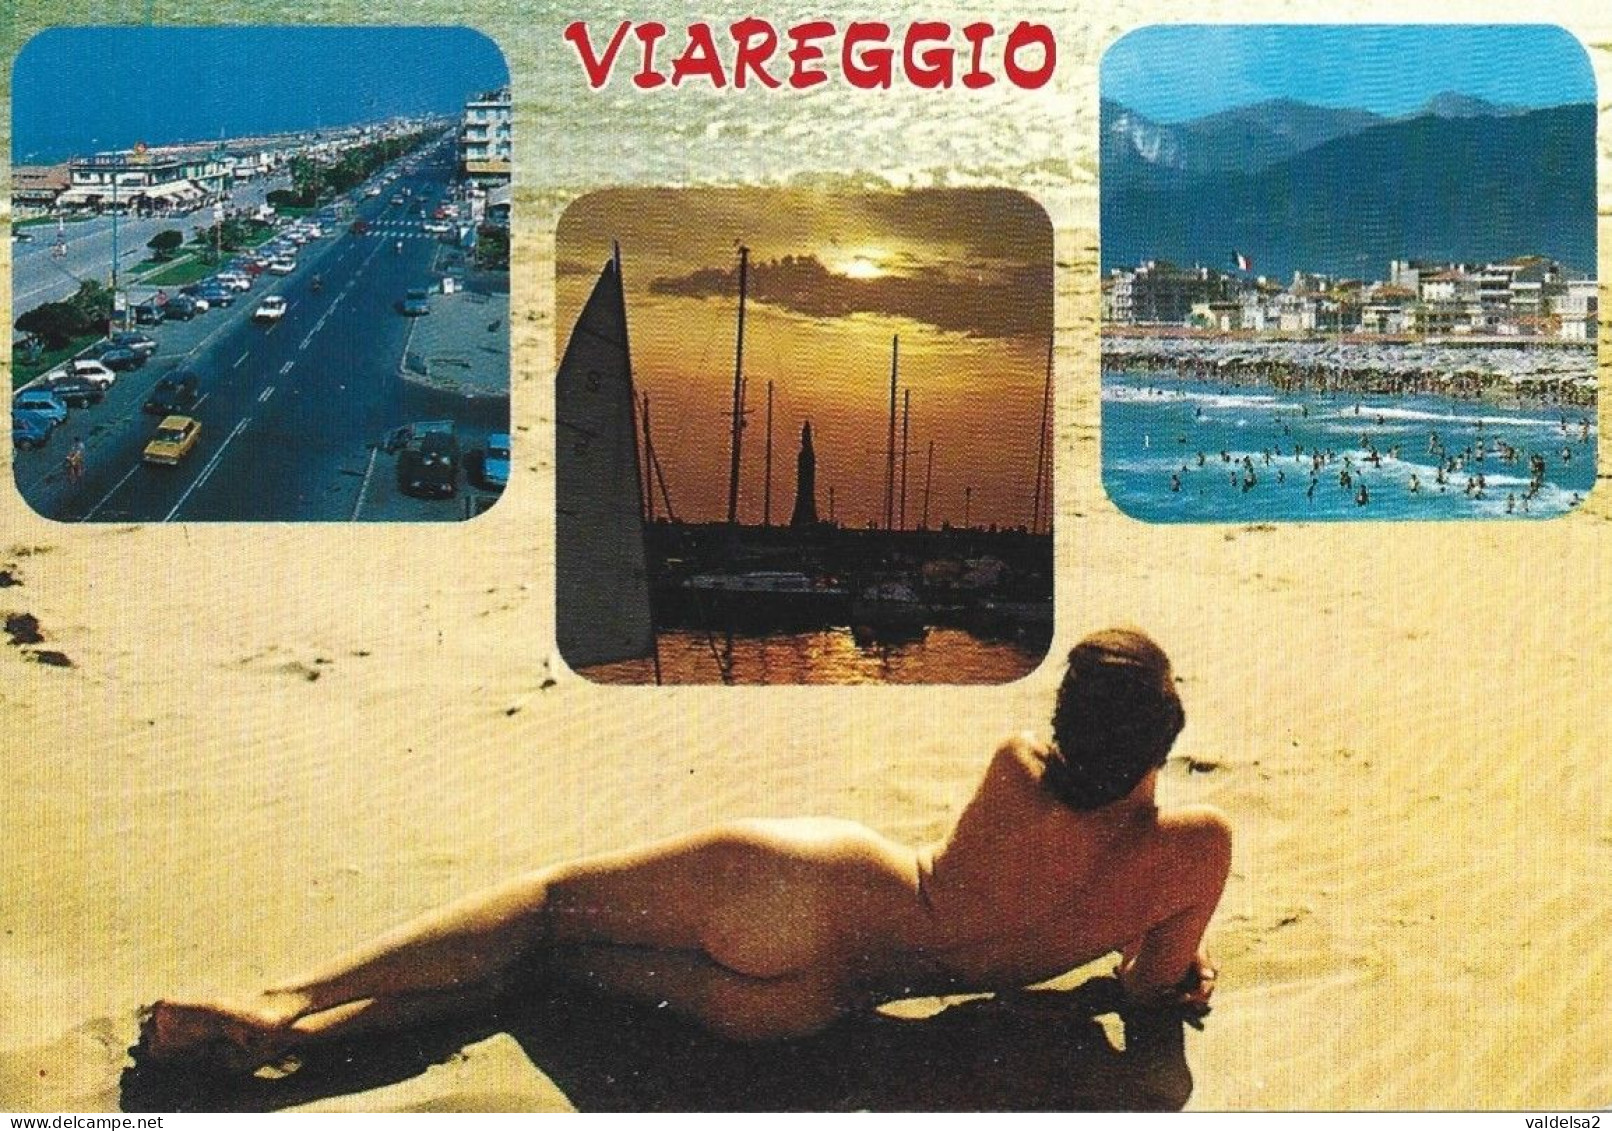 VIAREGGIO - LUCCA - 4 VEDUTE - DONNINA IN POSA SEXY - SEXY WOMAN - BIKINI - NUDE - NAKED - CHARME -1989 - Viareggio